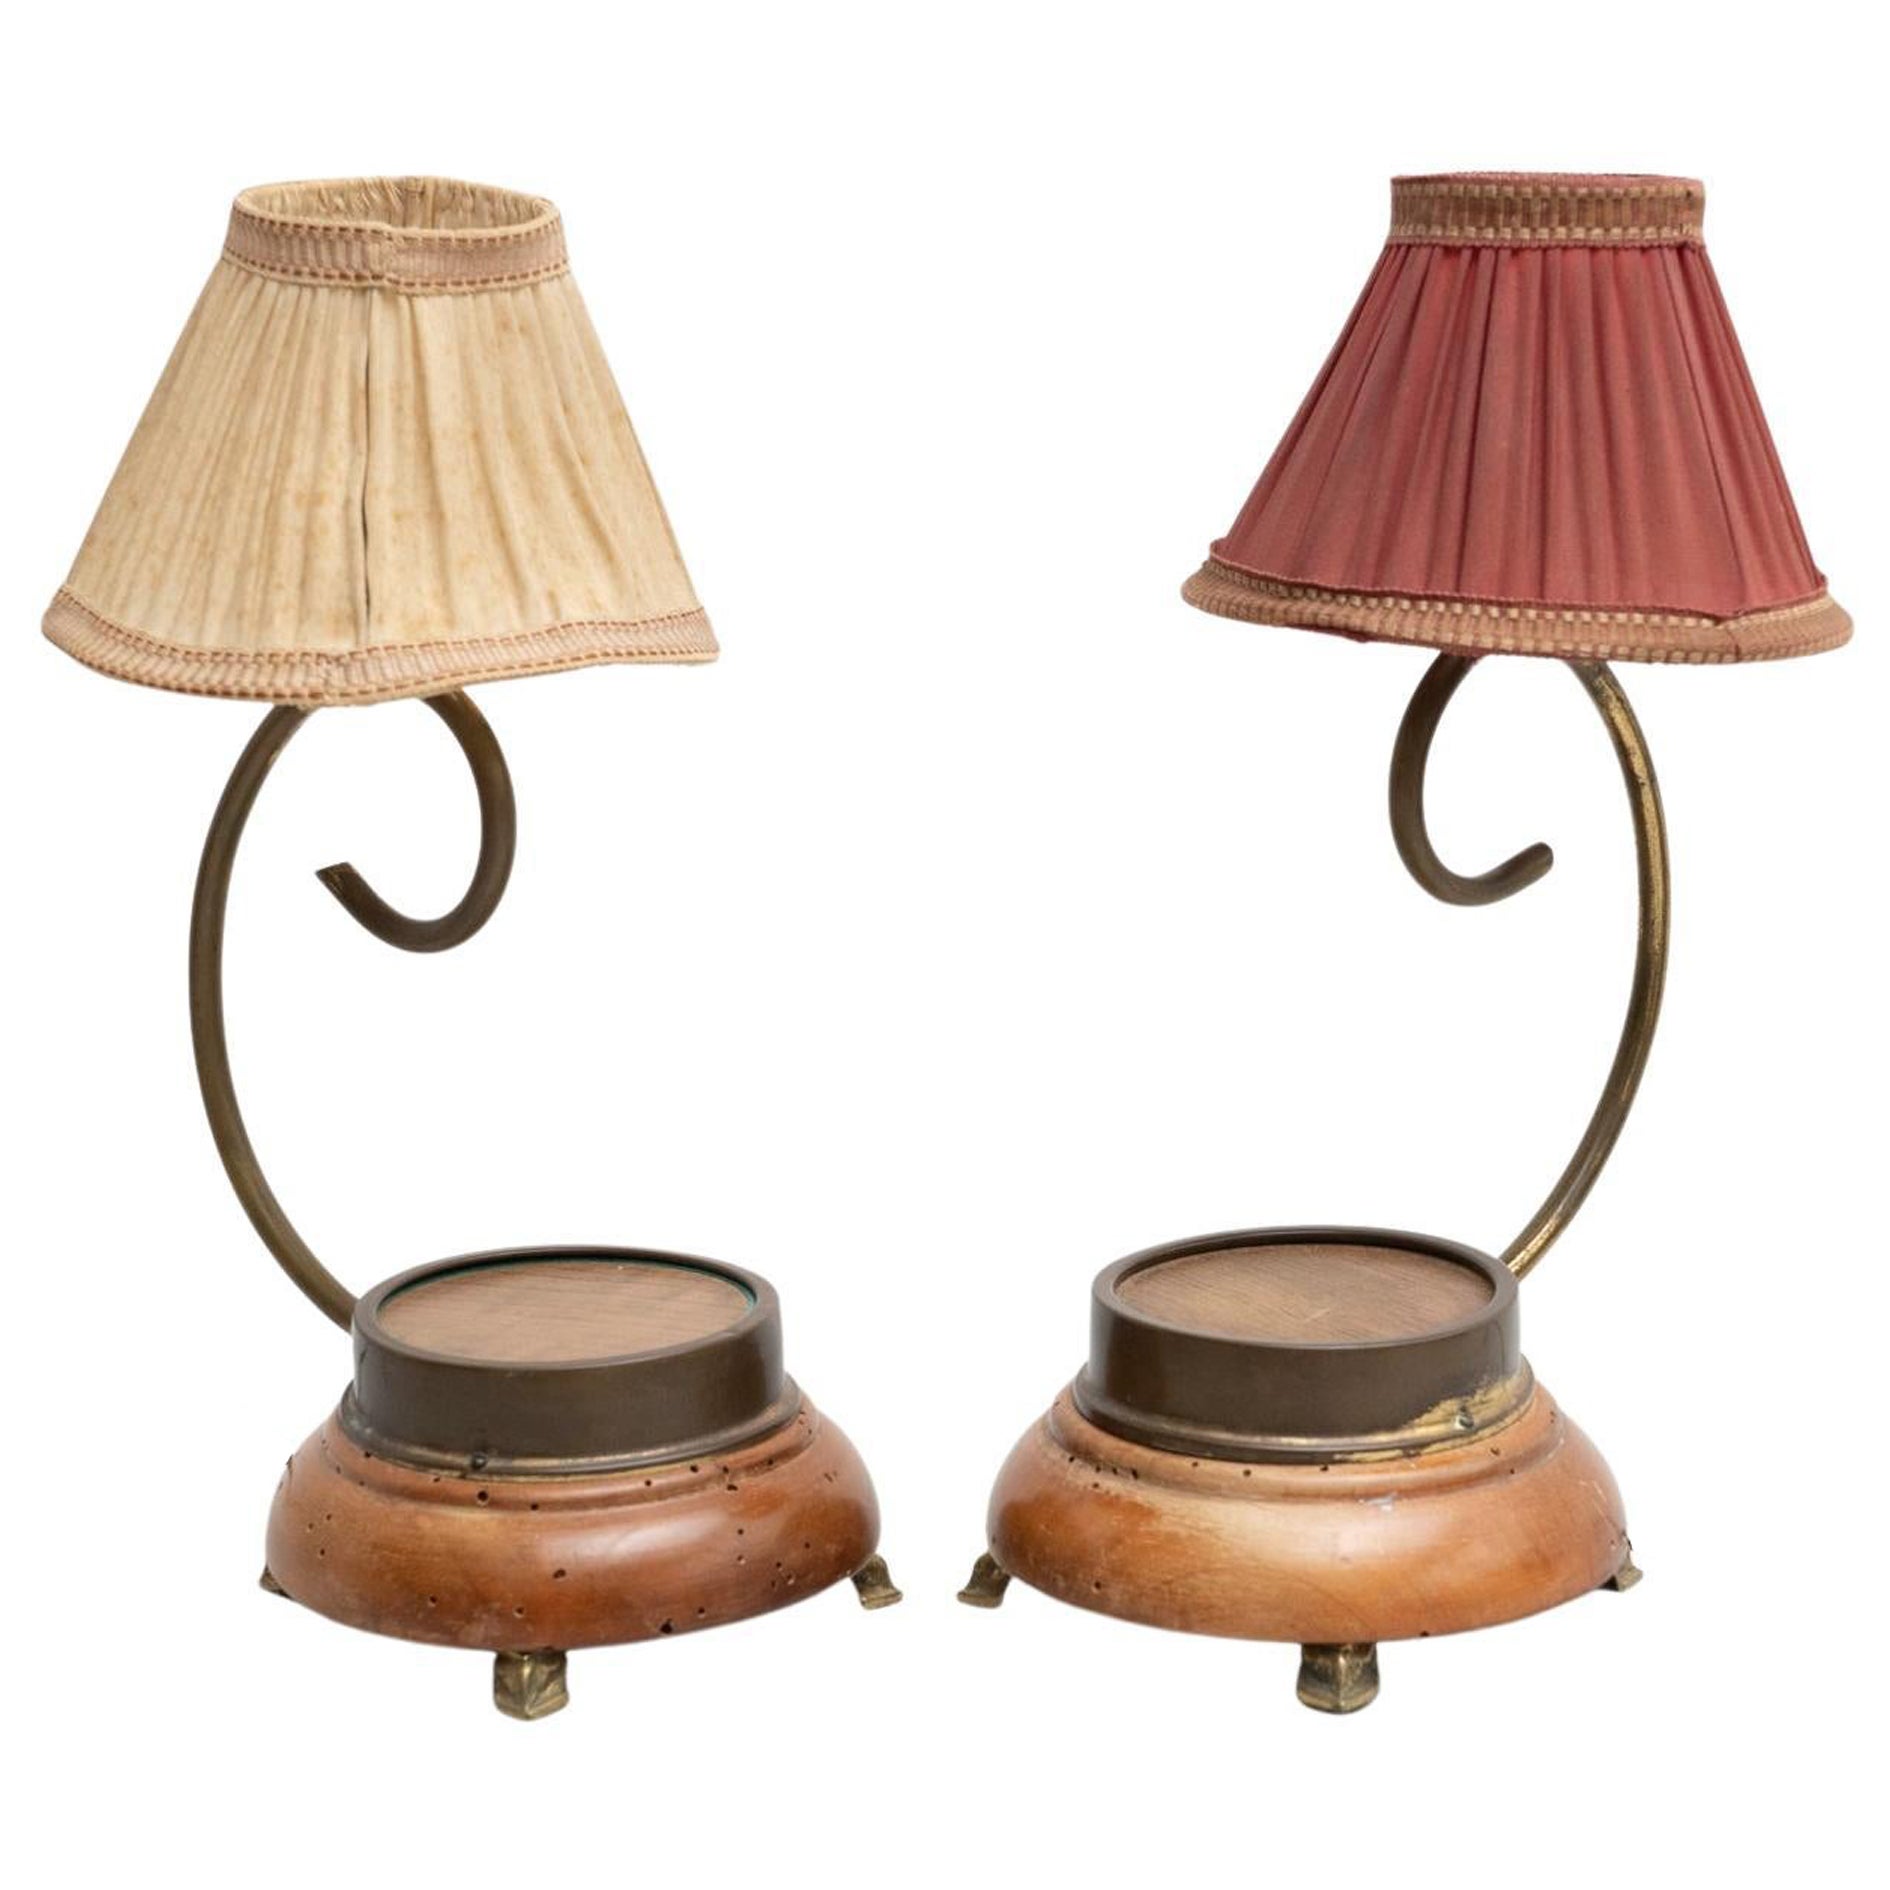 Satz von zwei Tischlampen aus Metall und Holz aus dem frühen 20. Jahrhundert